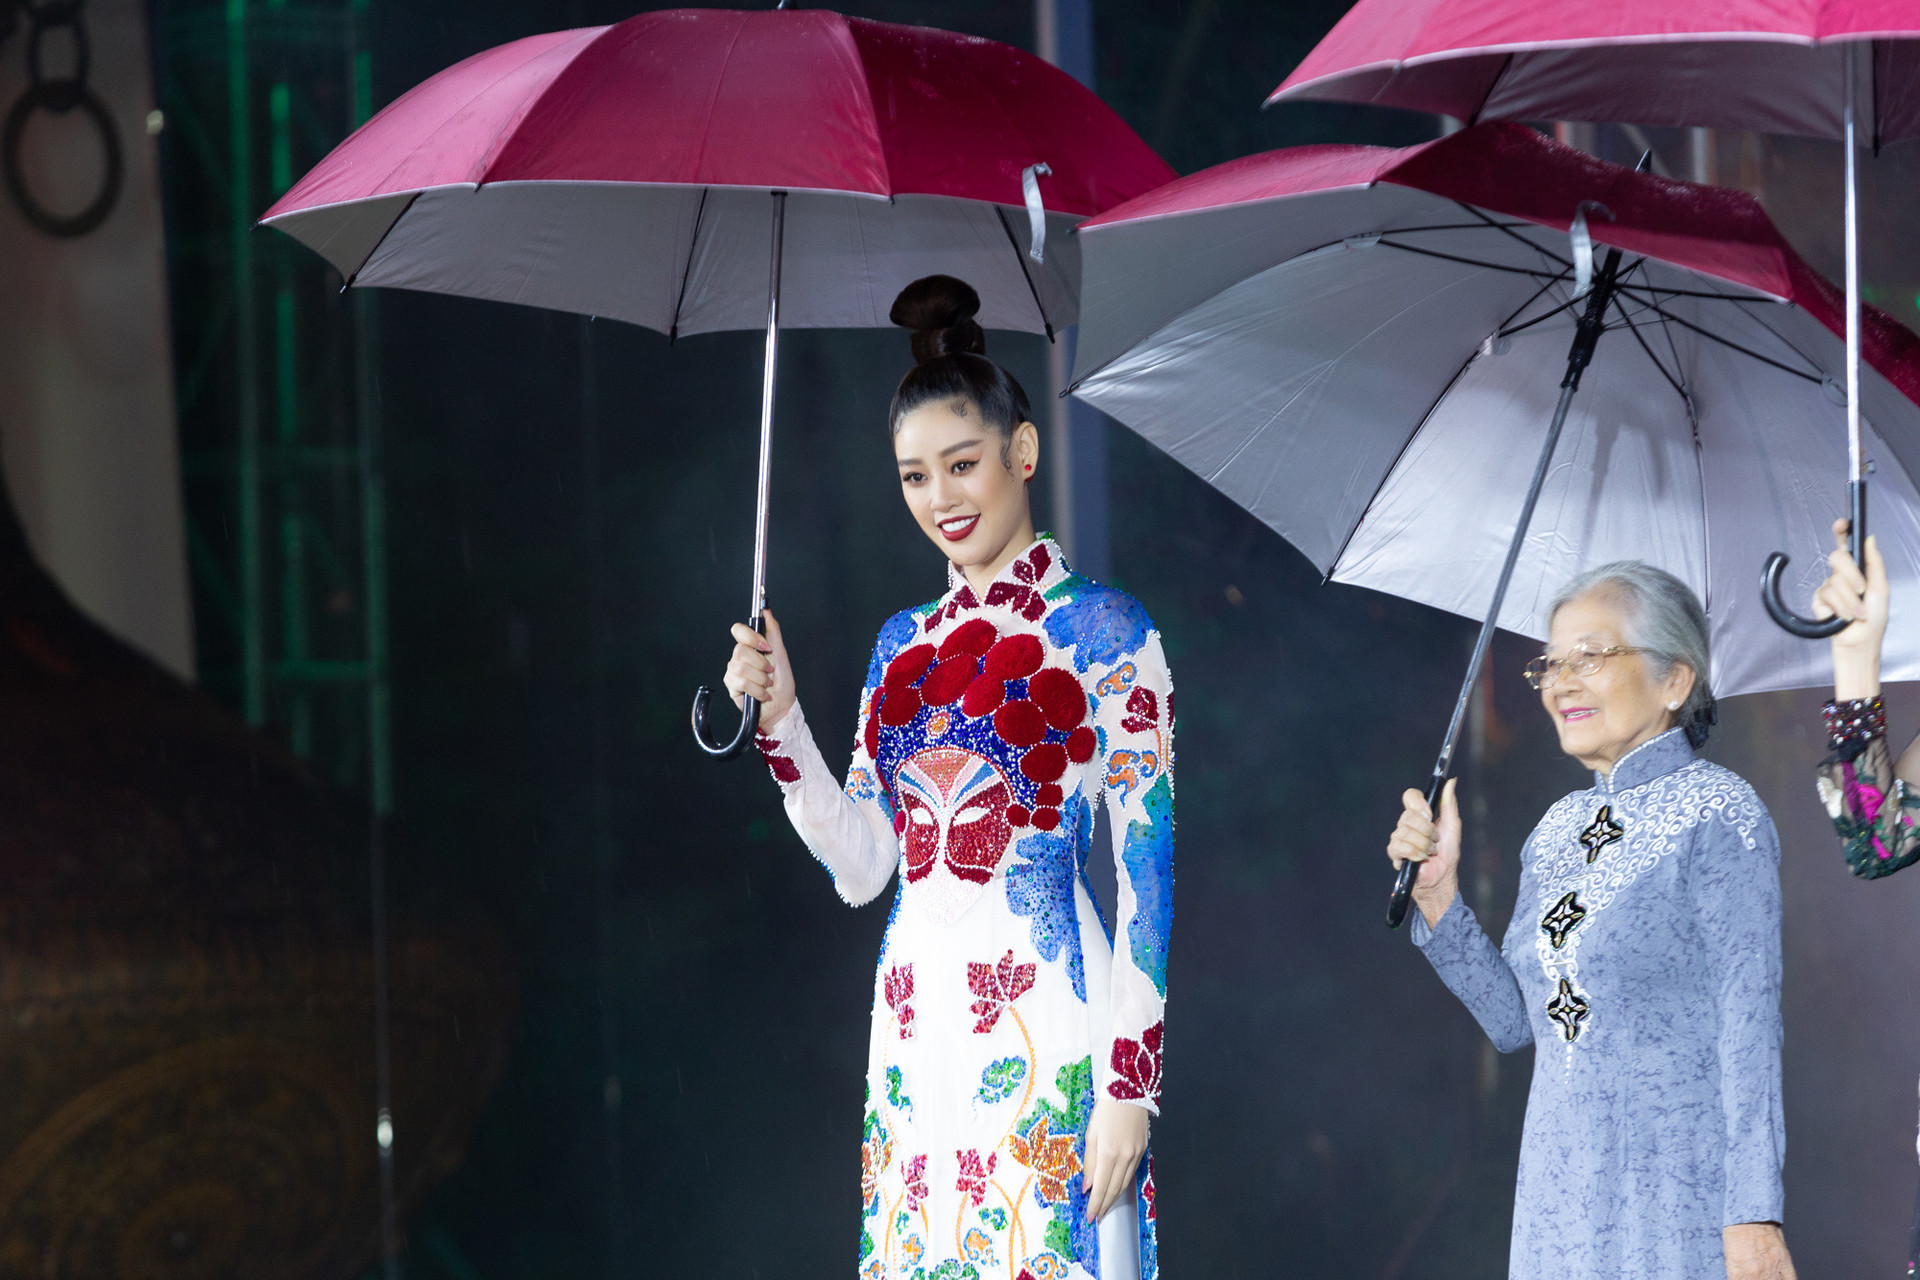 Hoa hậu Khánh Vân nổi bật tại Lễ hội Áo dài TP.HCM 2020 - Ảnh 1.